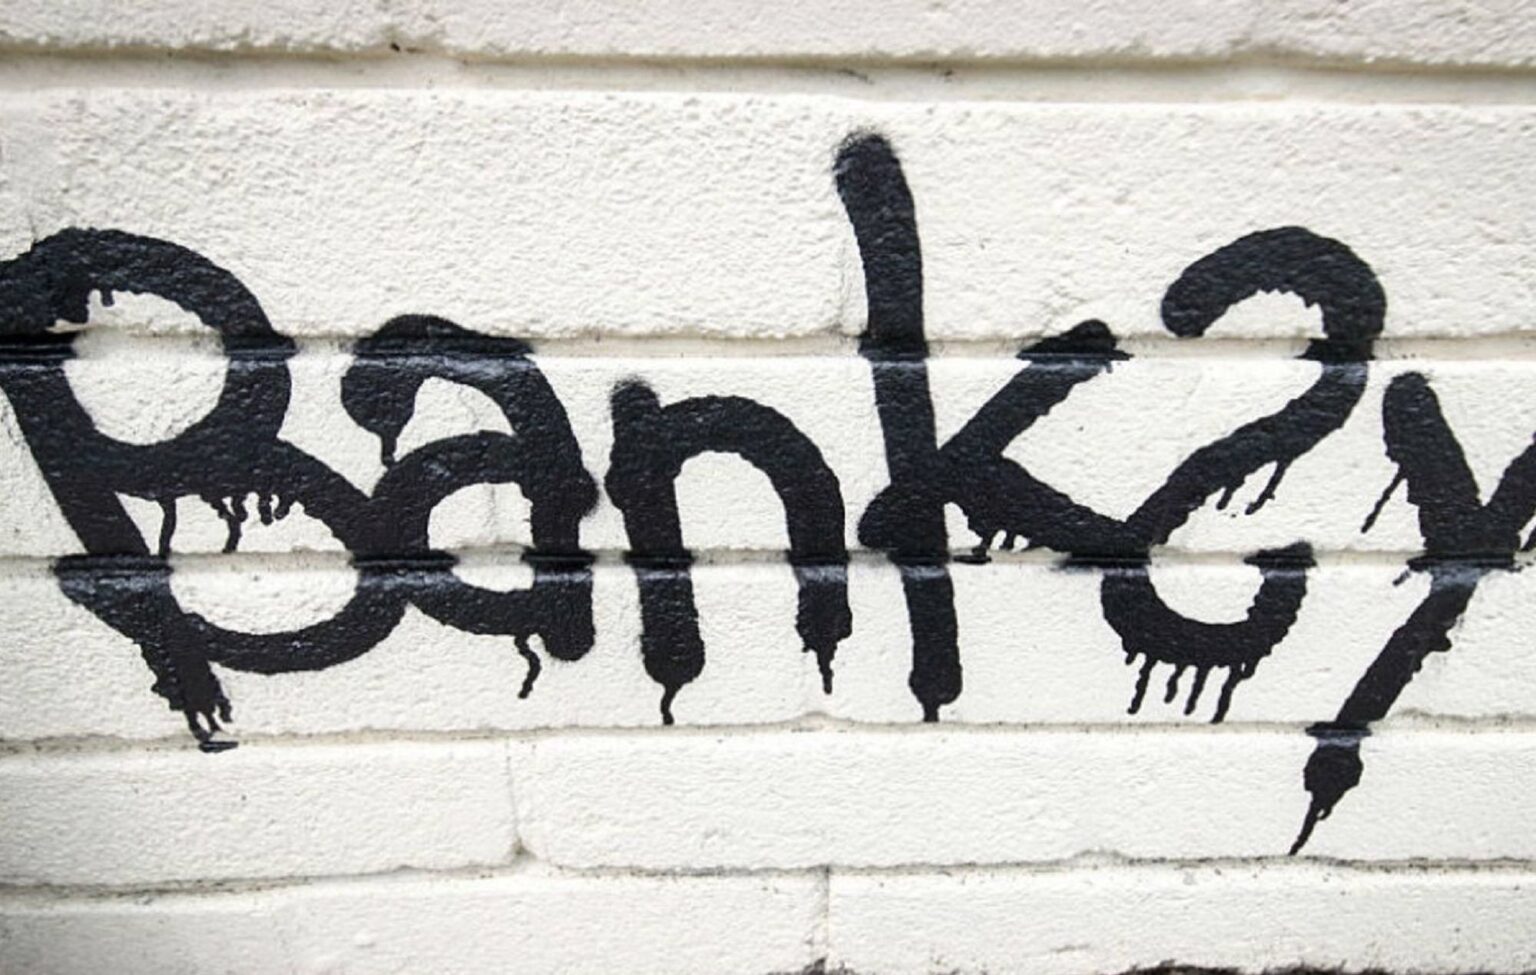 Suspeito de mural de Banksy aparece em prédio em Londres